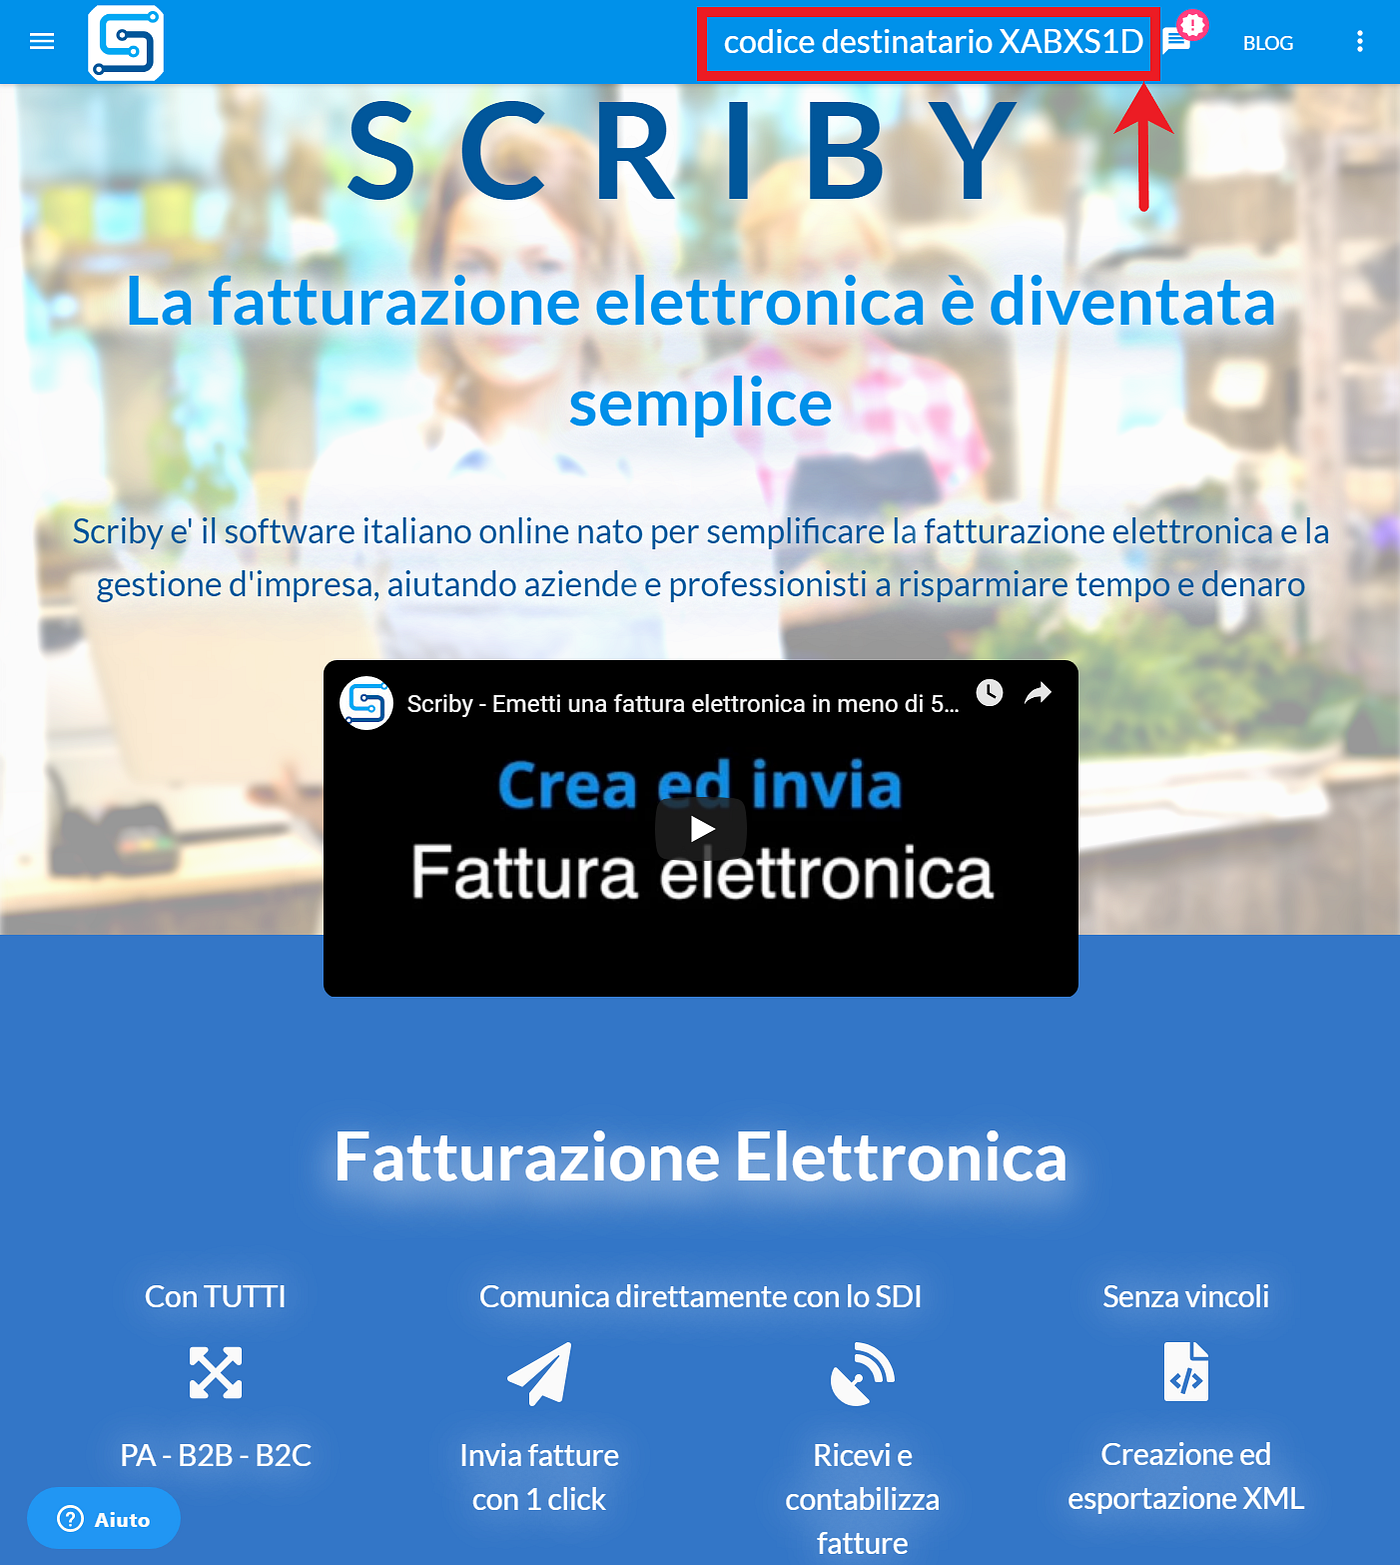 Fatturazione elettronica: codice univoco destinatario | by Scriby.it |  Medium